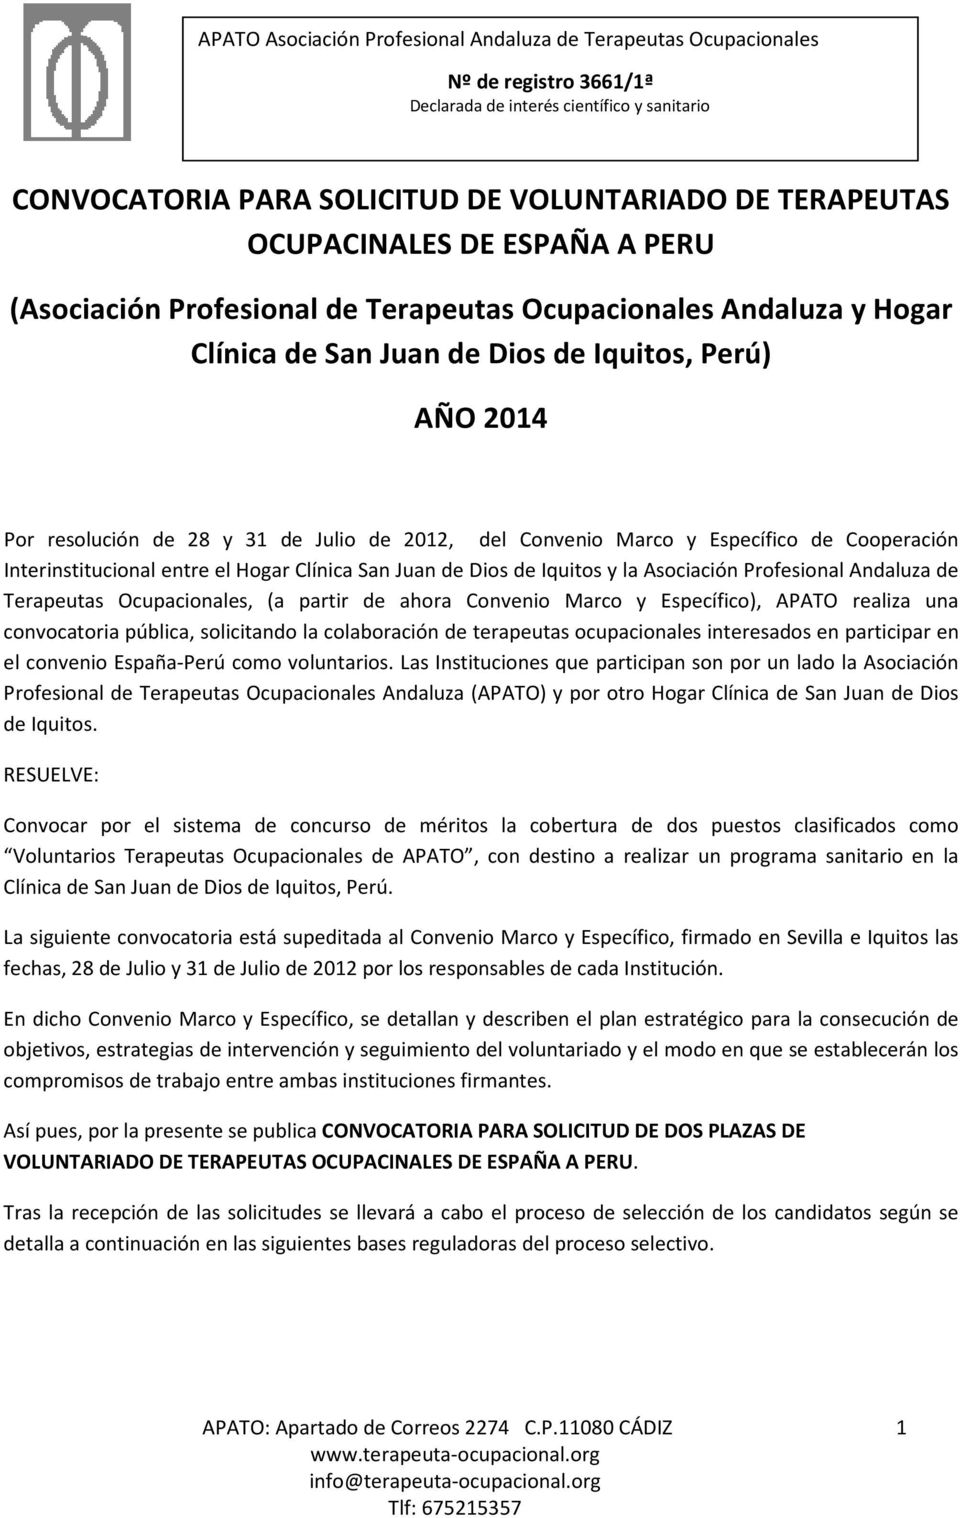 Profesional Andaluza de Terapeutas Ocupacionales, (a partir de ahora Convenio Marco y Específico), APATO realiza una convocatoria pública, solicitando la colaboración de terapeutas ocupacionales